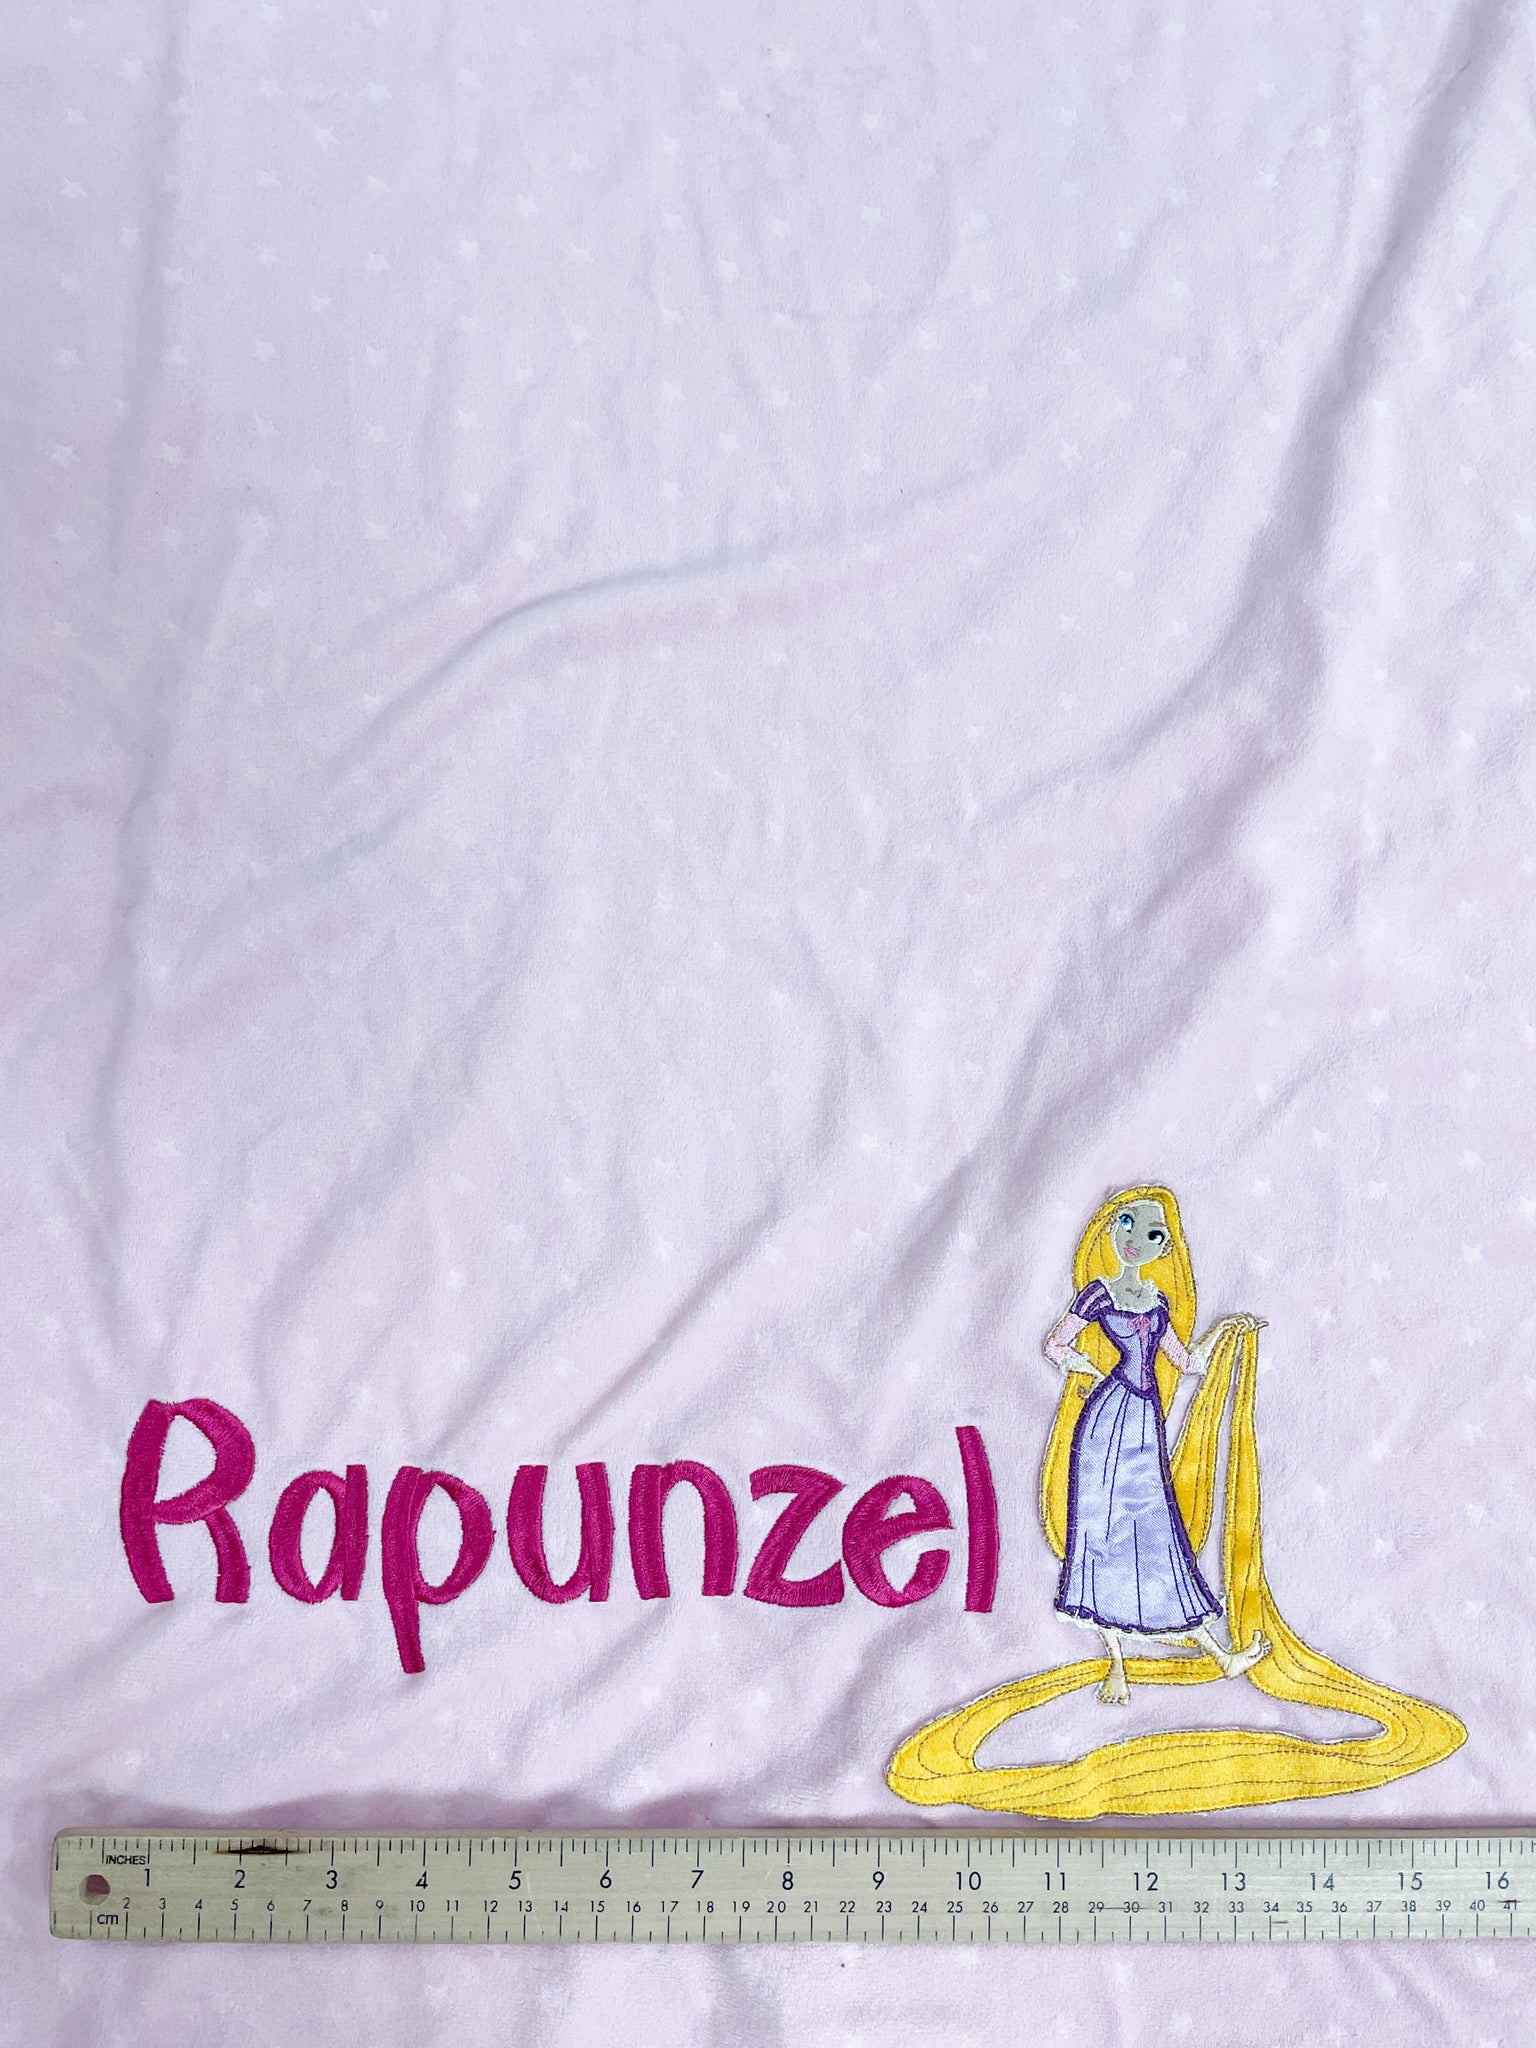 Polar Fleece and Minky Slumber Bag UF.O. Bundle - Rapunzel